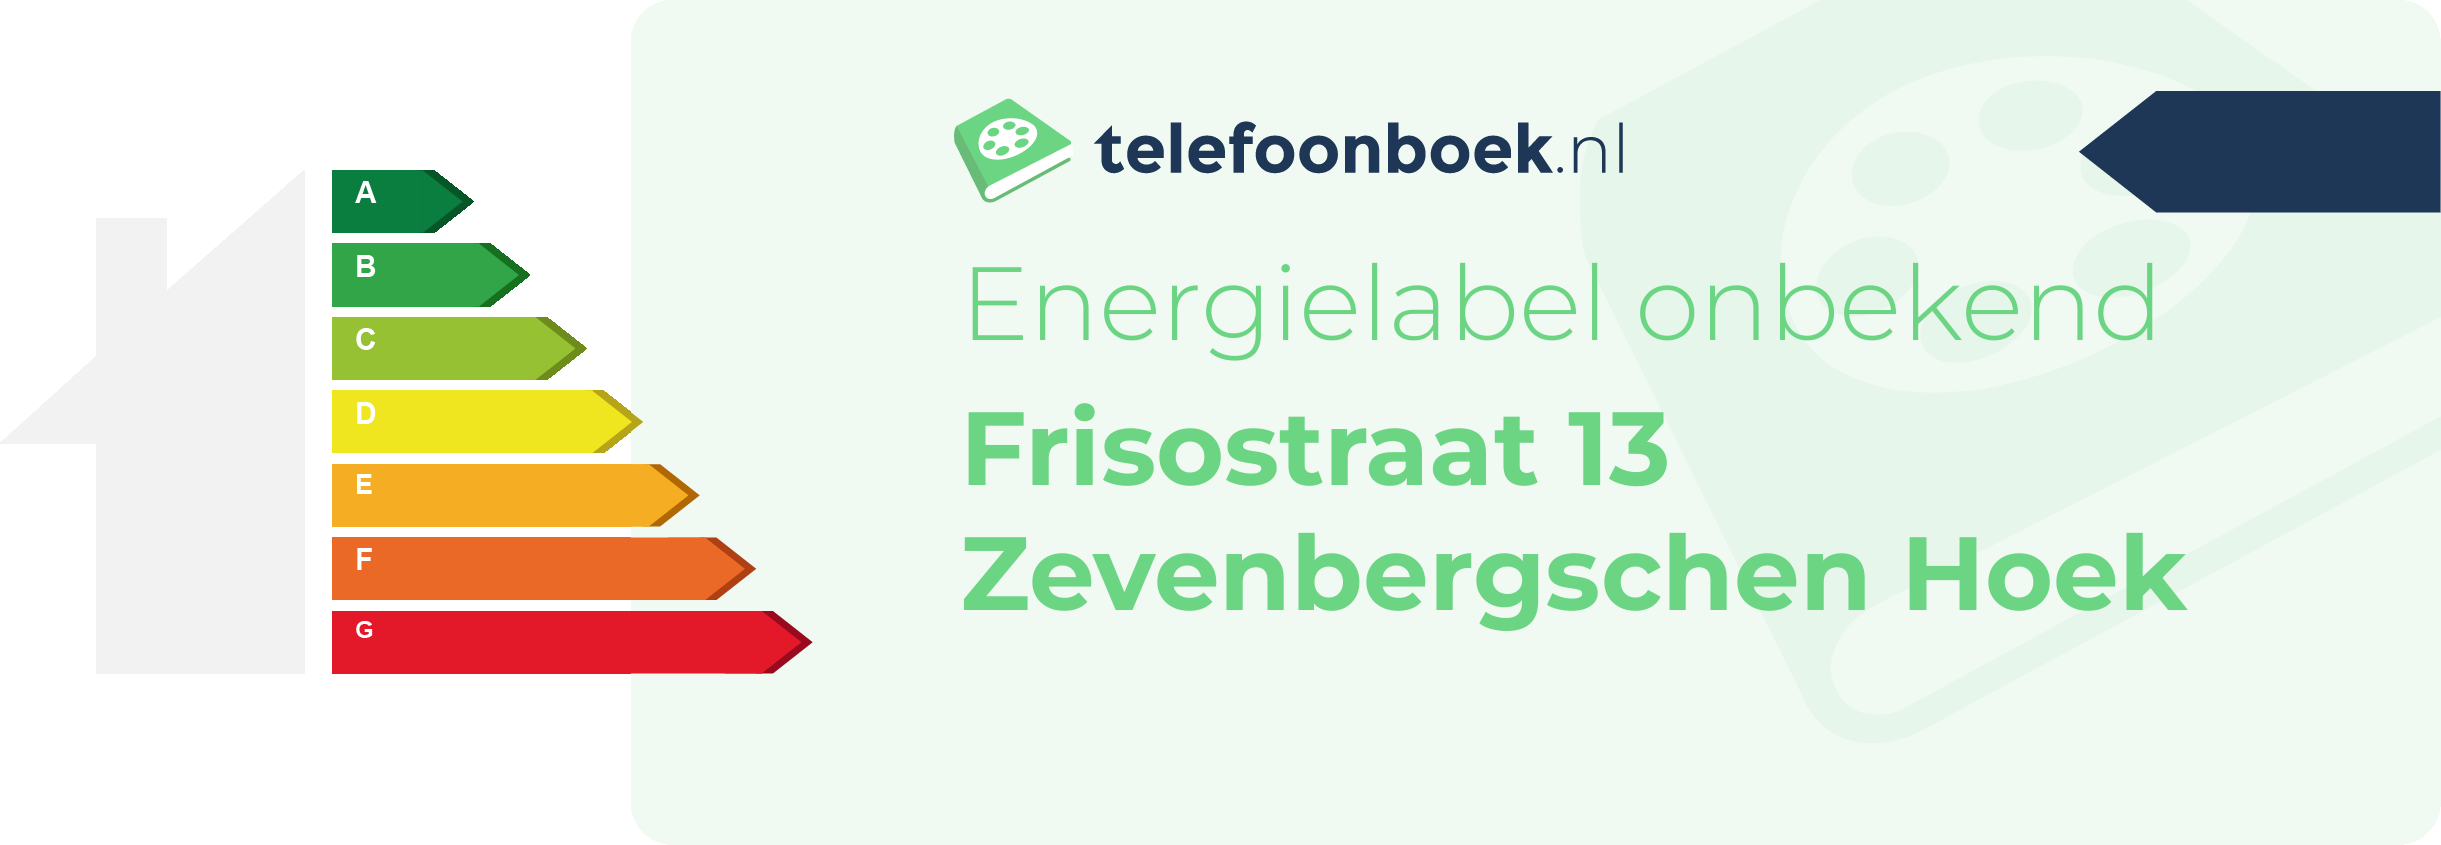 Energielabel Frisostraat 13 Zevenbergschen Hoek